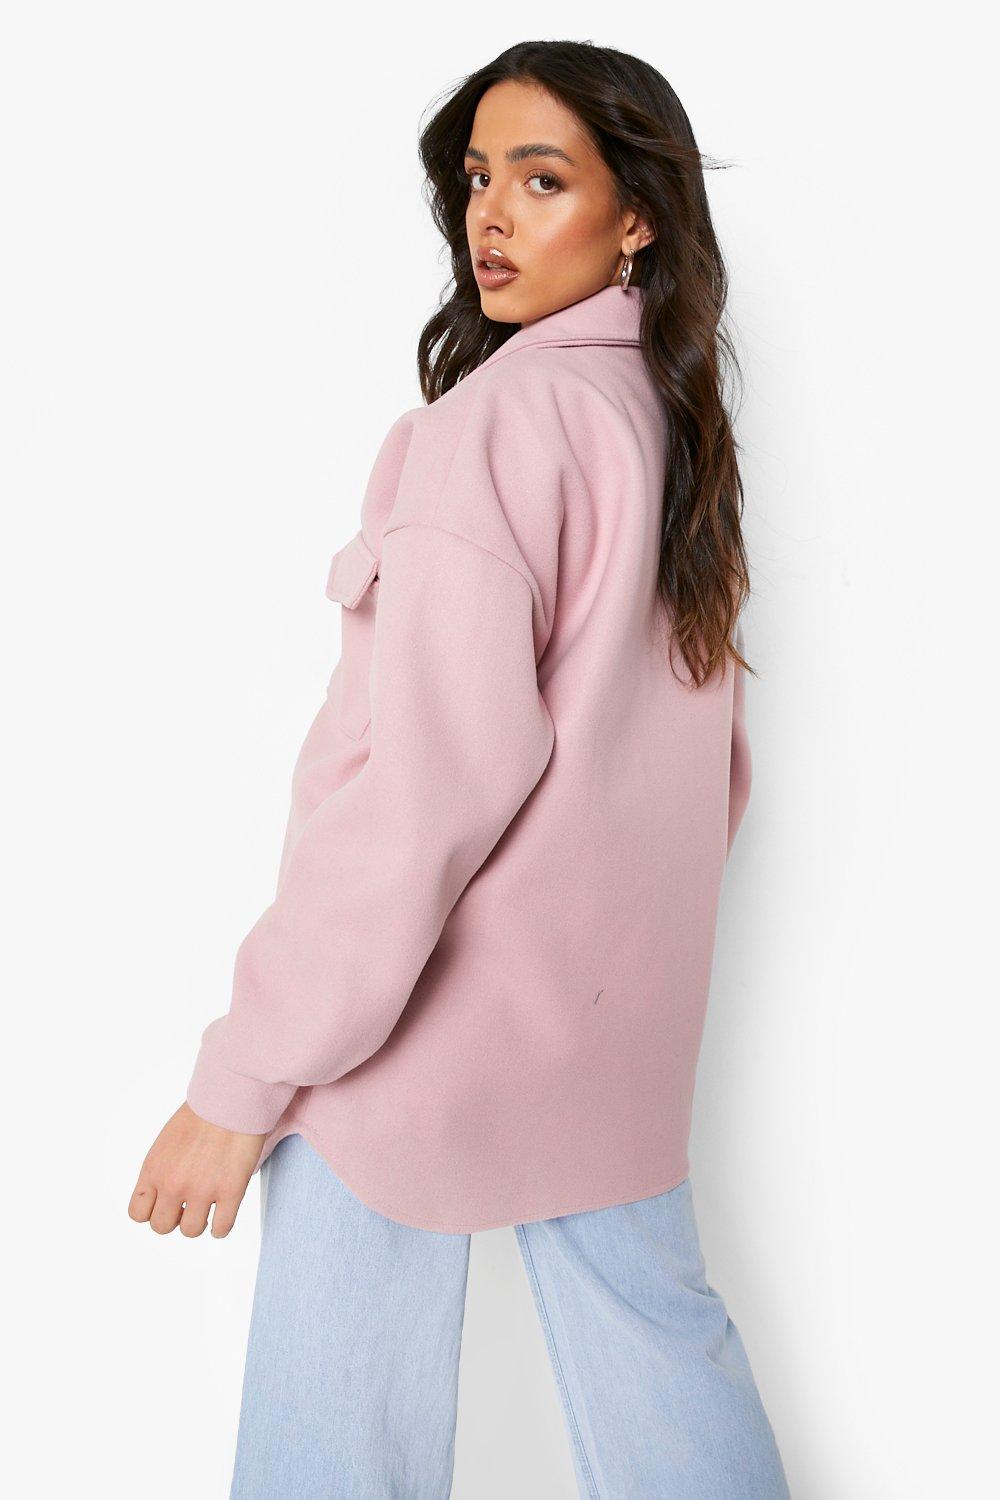 Camisa chaqueta efecto lana color pastel | boohoo